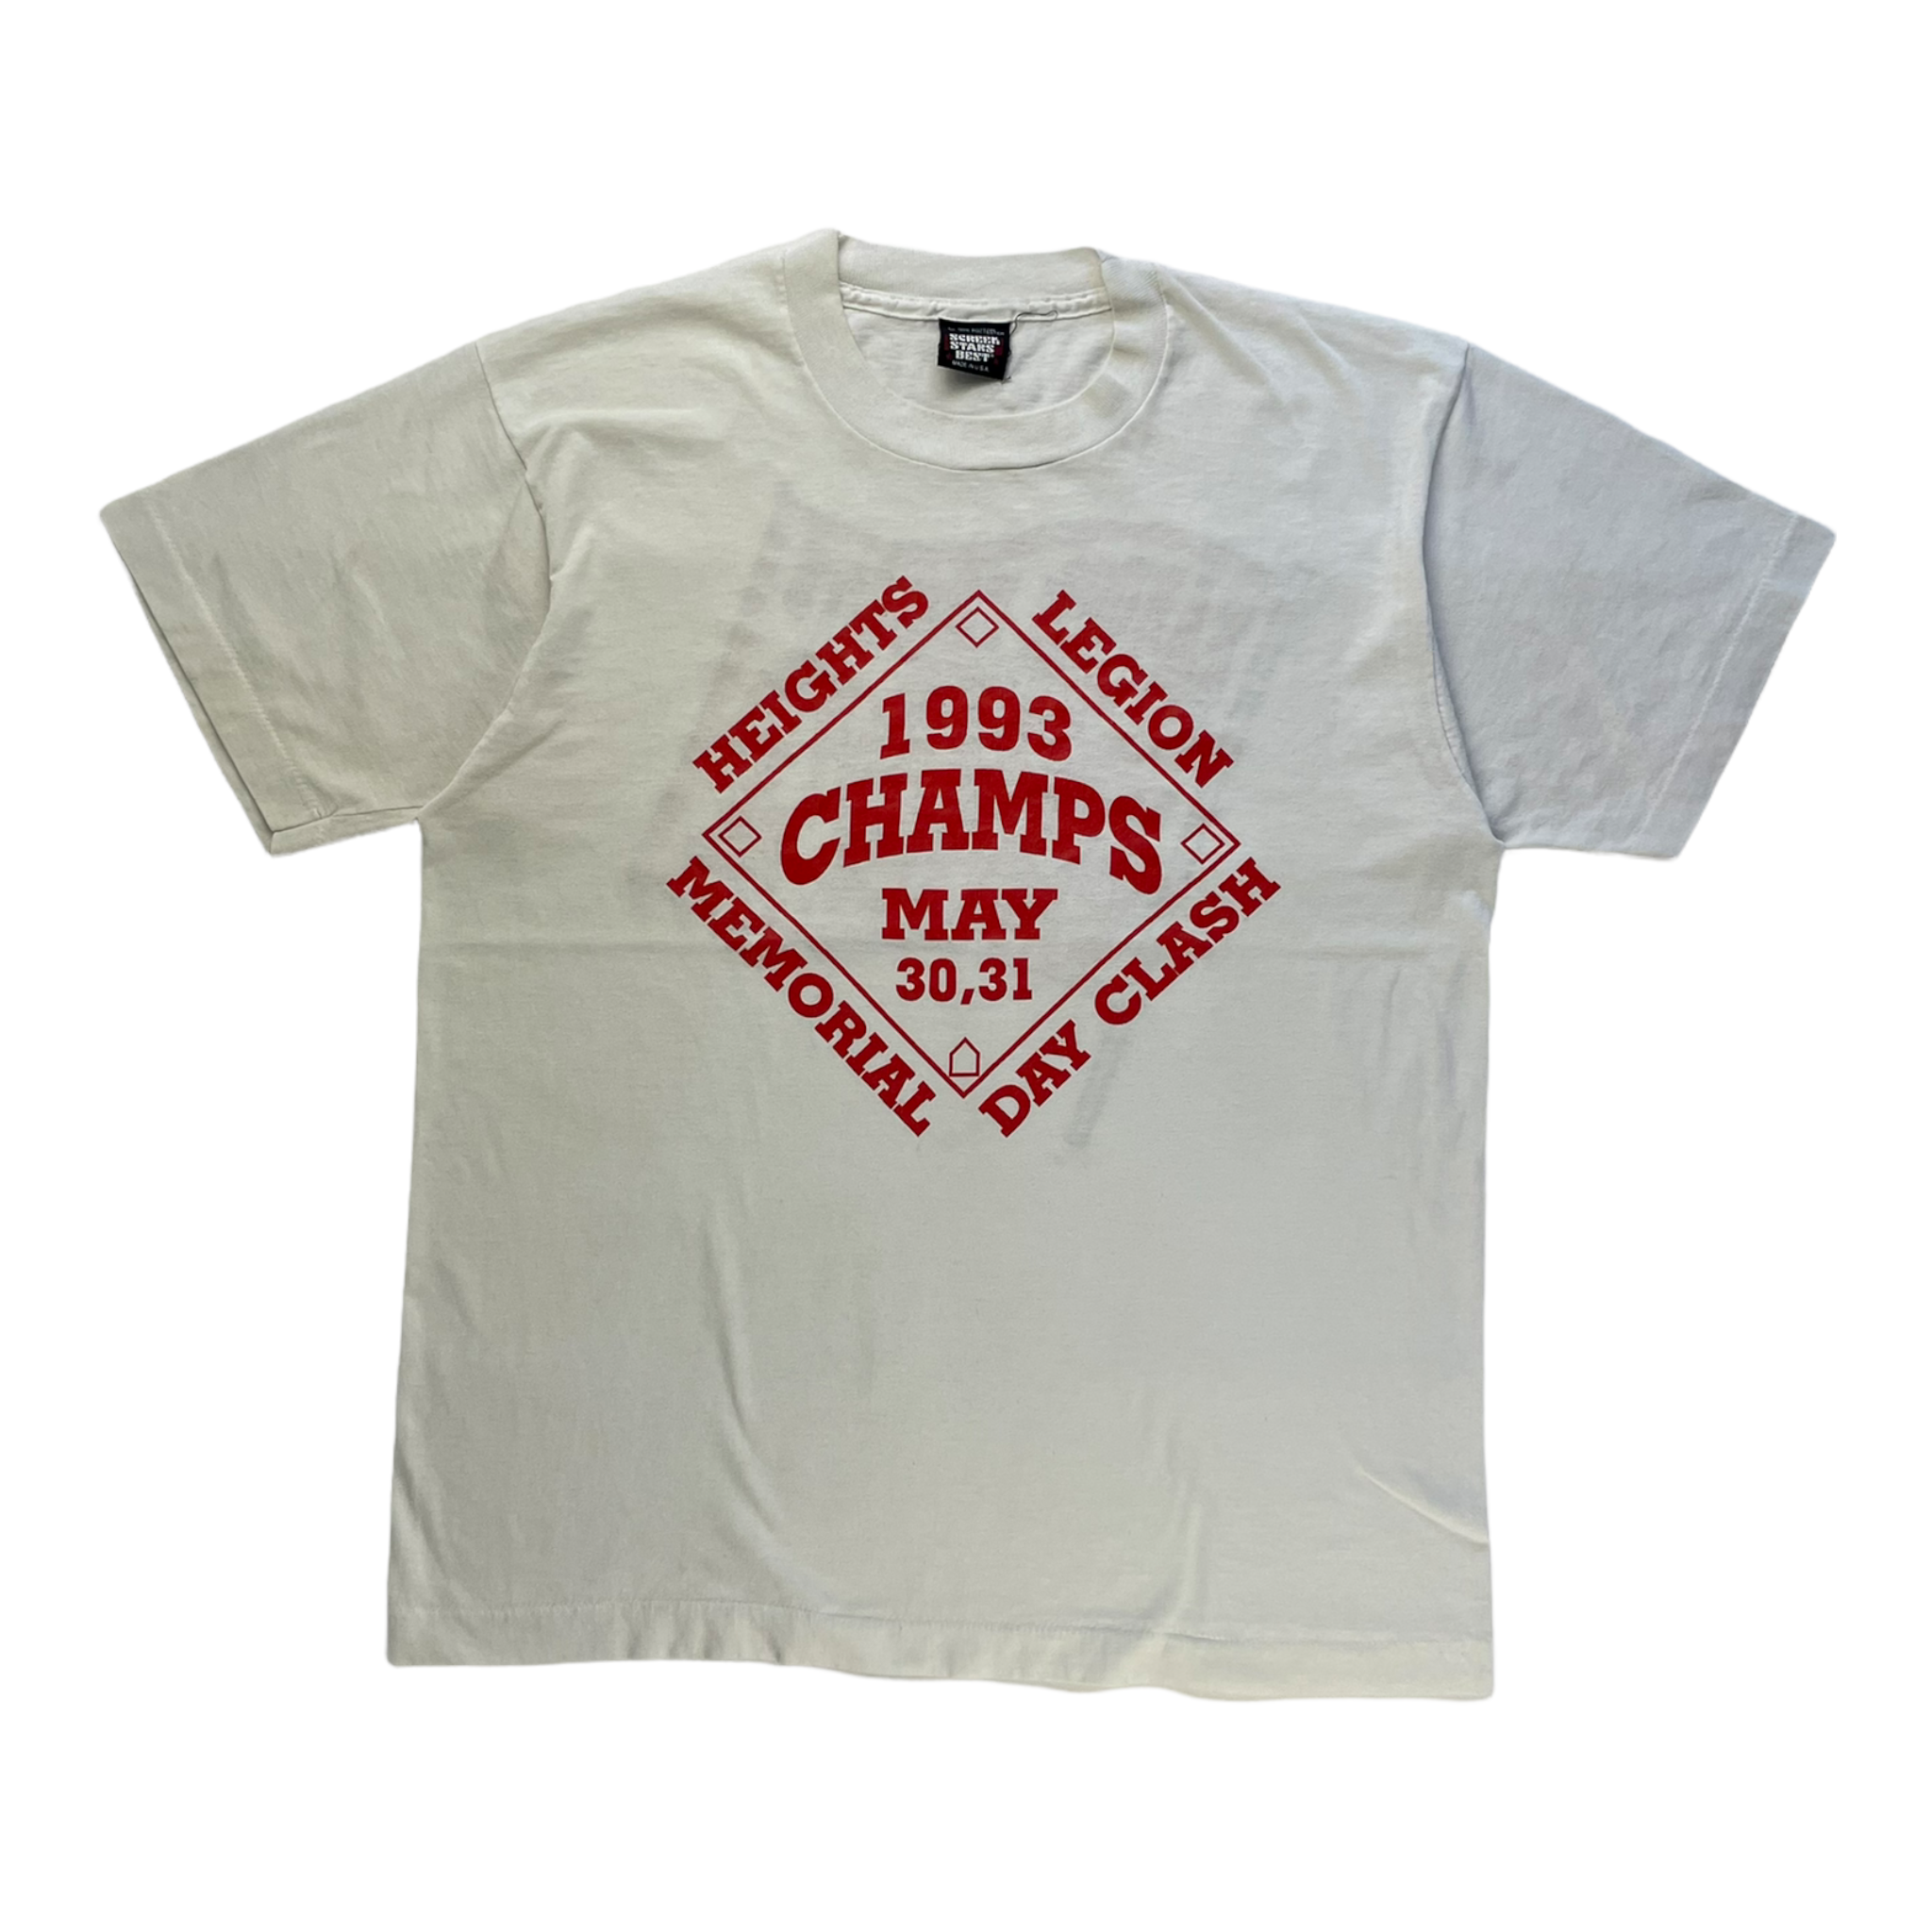 Vintage 1993 Champs T-shirt - Restorecph